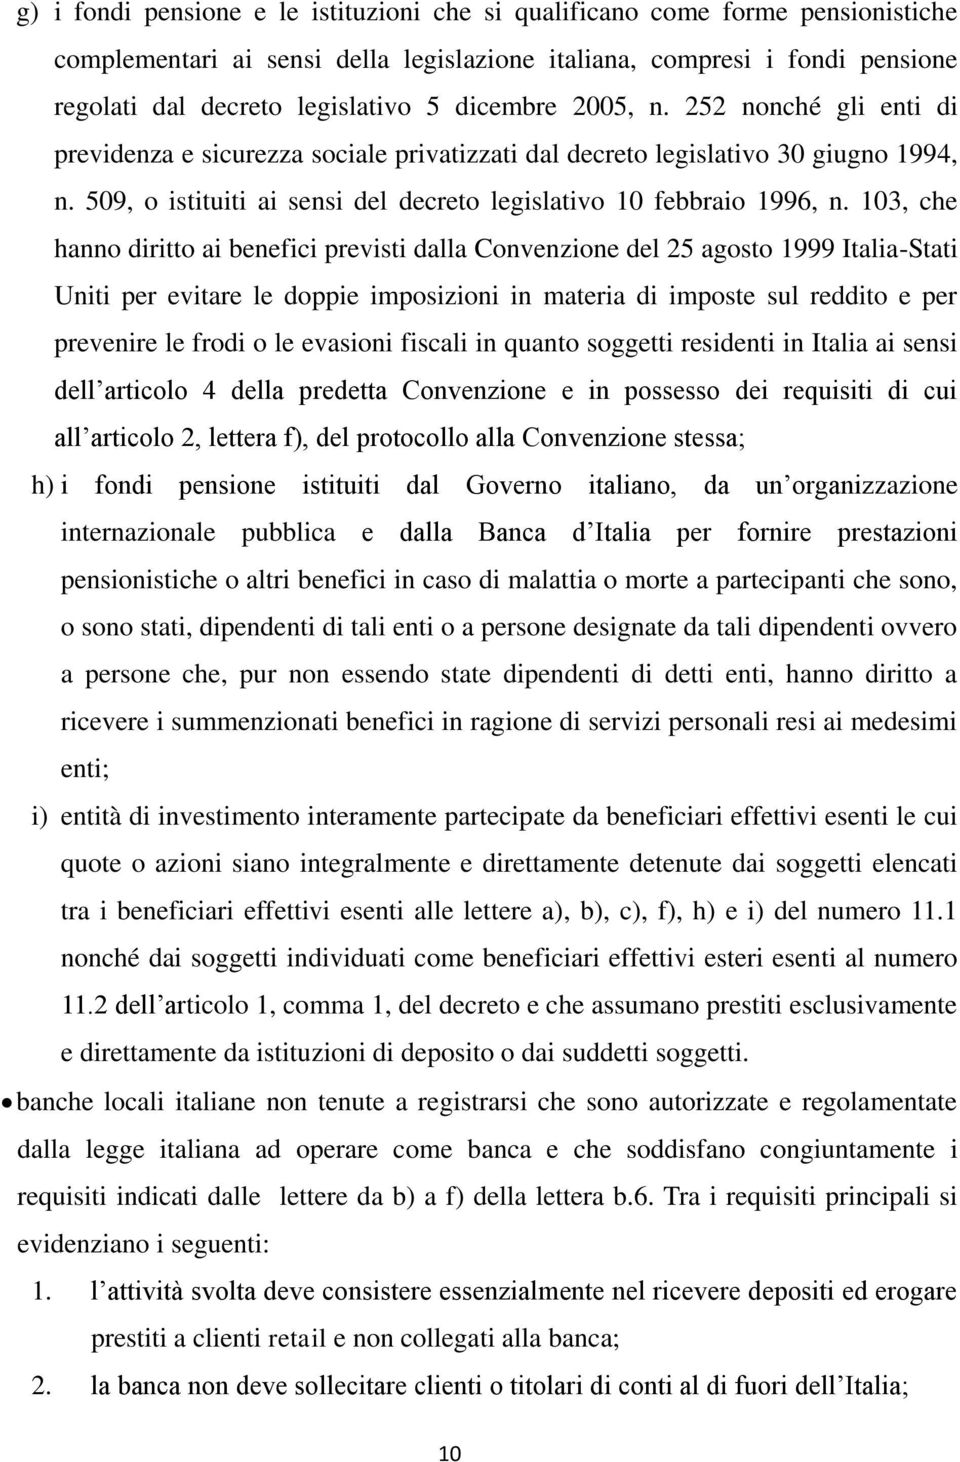 103, che hanno diritto ai benefici previsti dalla Convenzione del 25 agosto 1999 Italia-Stati Uniti per evitare le doppie imposizioni in materia di imposte sul reddito e per prevenire le frodi o le